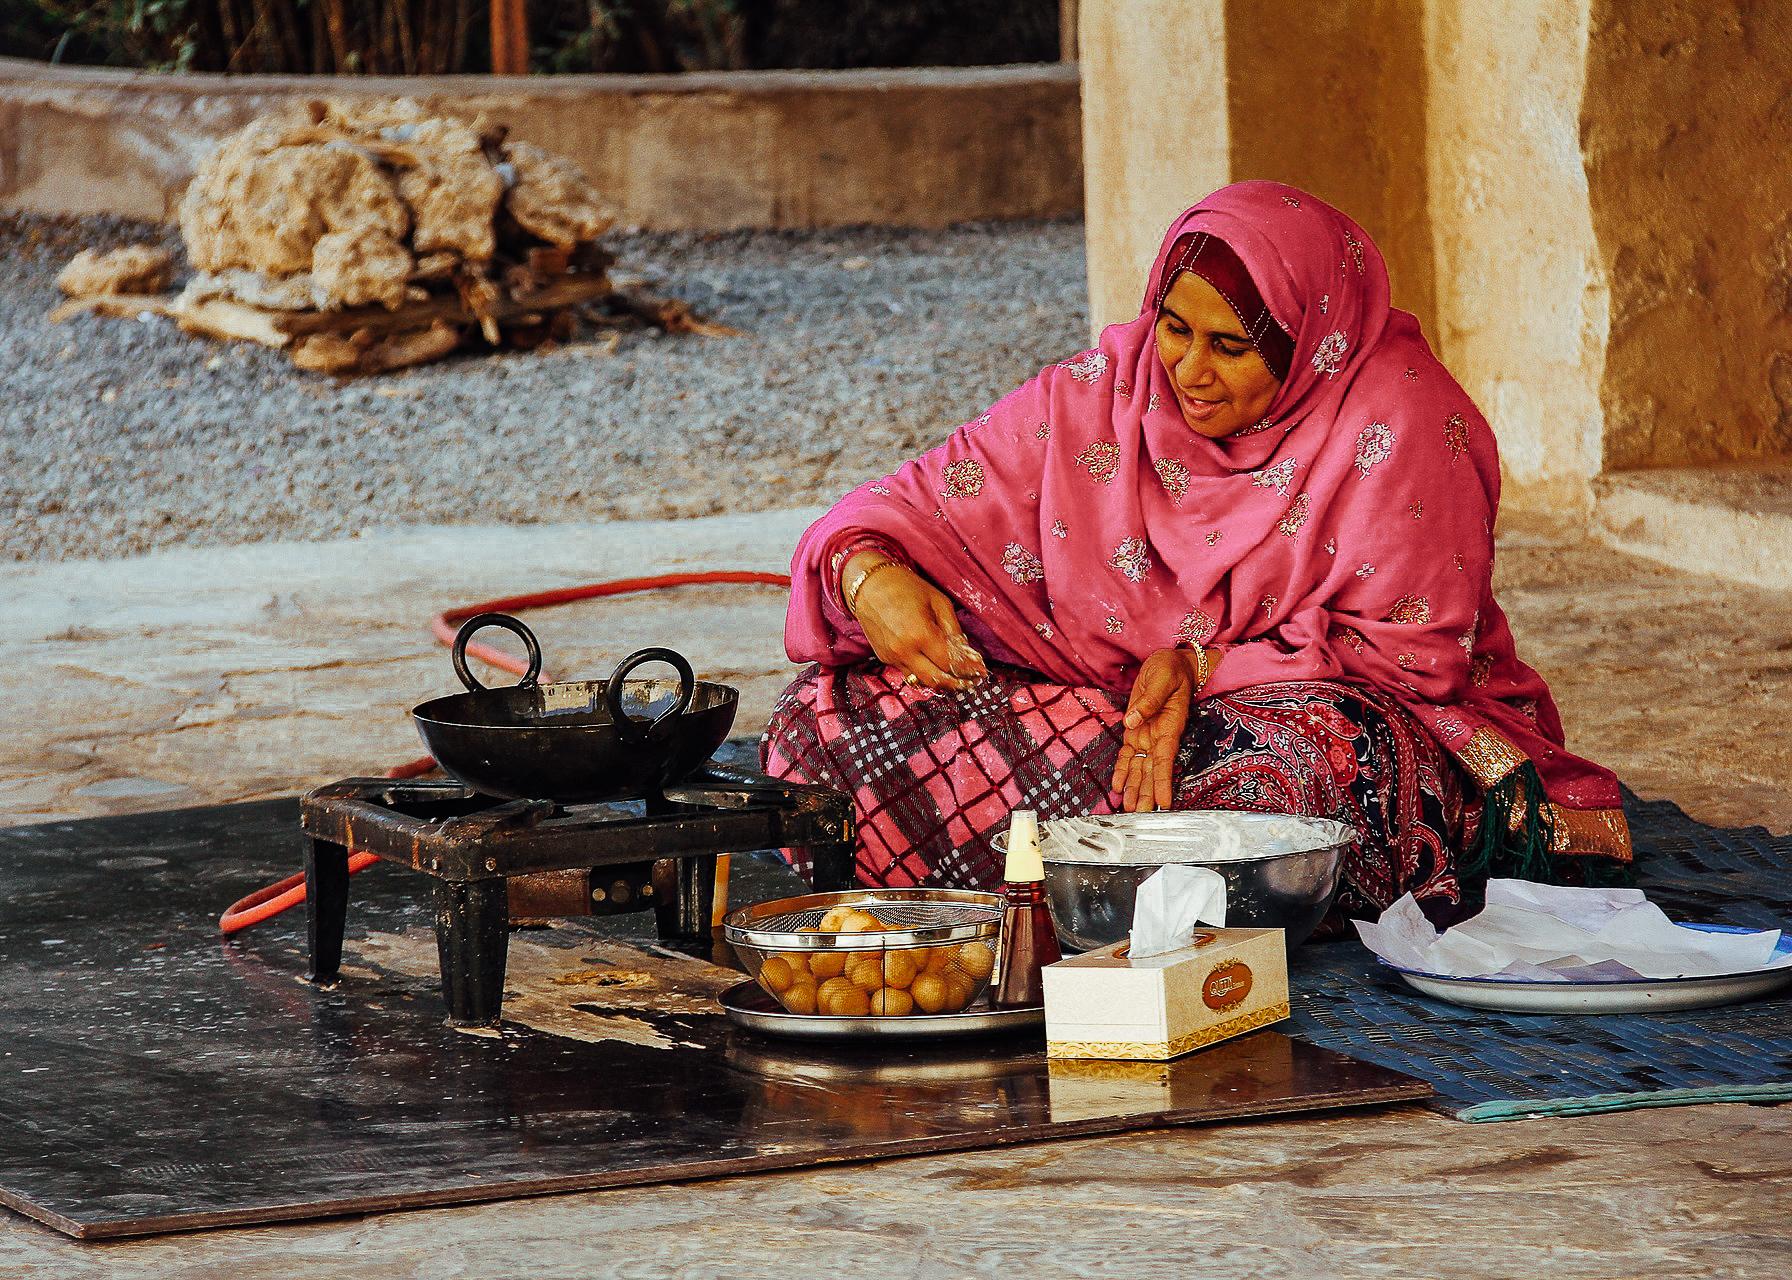 An Omani woman making Omani bread in Nizwa, Oman